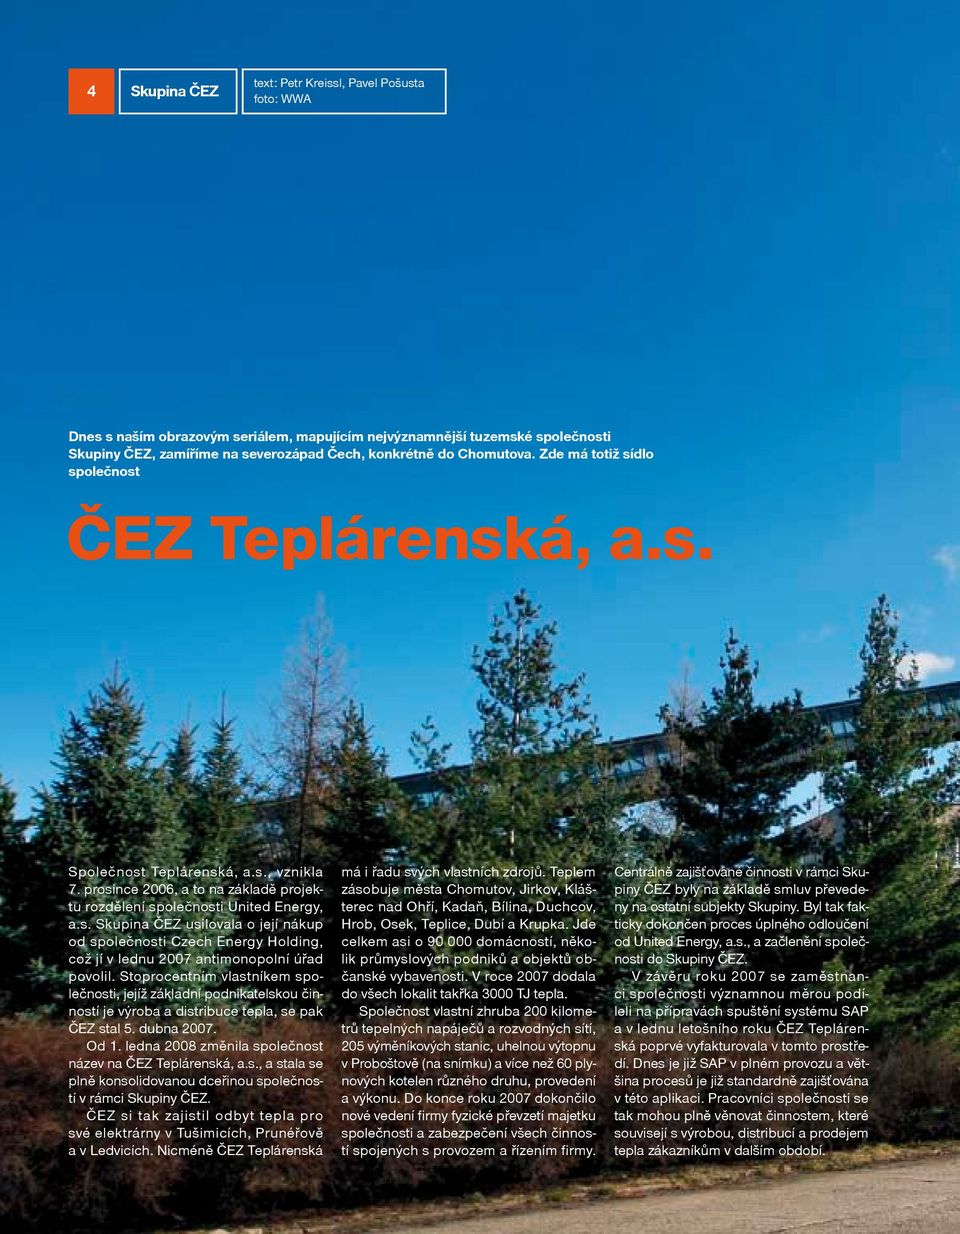 Stoprocentním vlastníkem společnosti, jejíž základní podnikatelskou činností je výroba a distribuce tepla, se pak ČEZ stal 5. dubna 2007. Od 1.